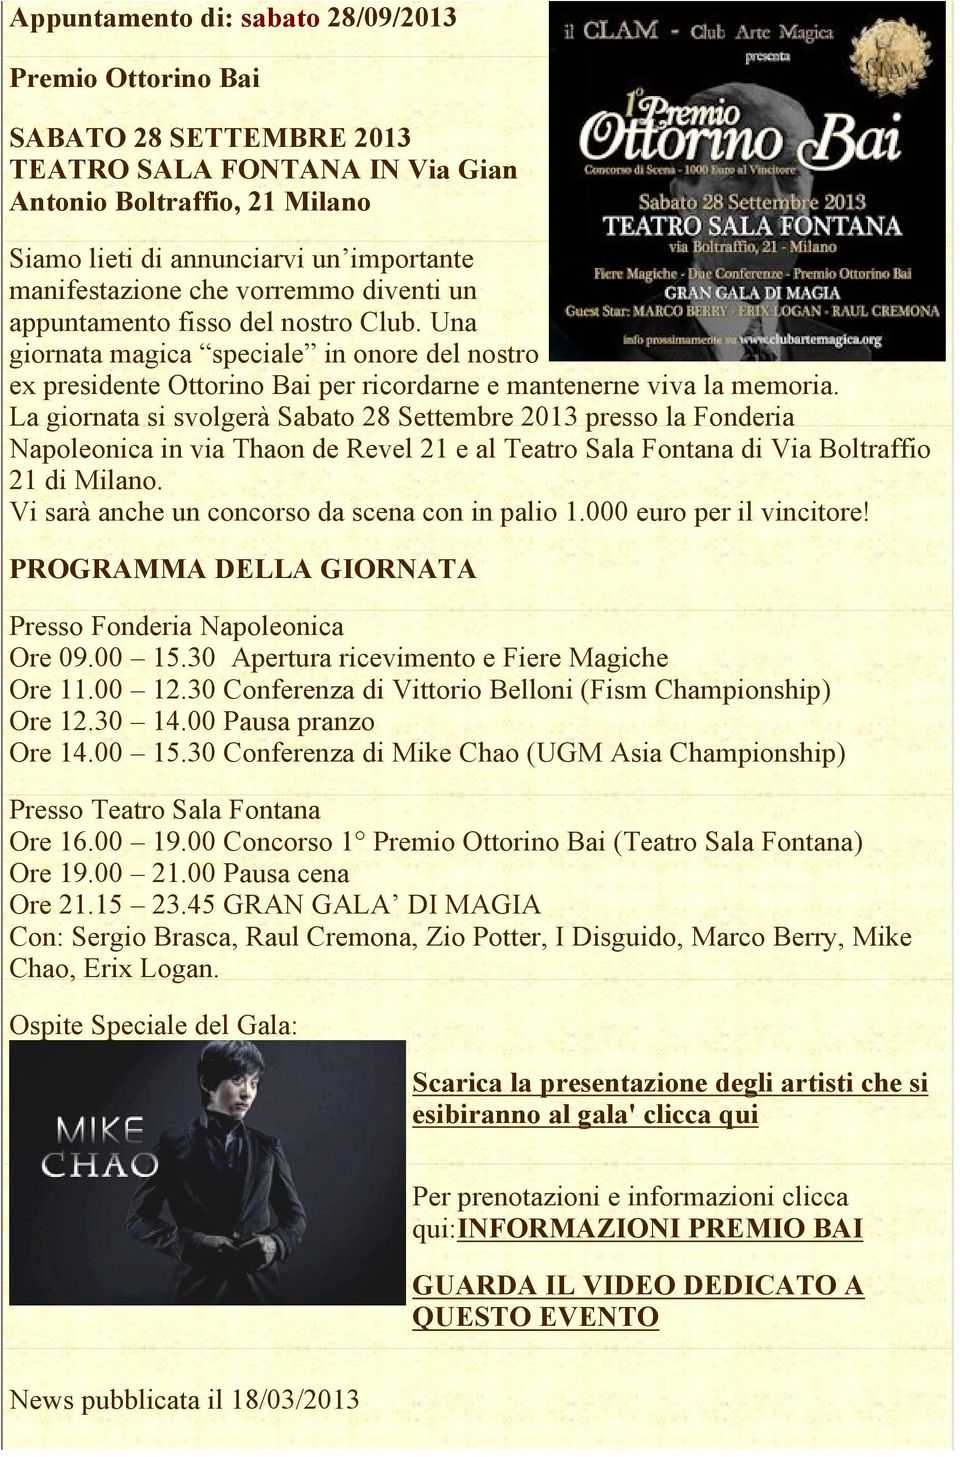 La giornata si svolgerà Sabato 28 Settembre 2013 presso la Fonderia Napoleonica in via Thaon de Revel 21 e al Teatro Sala Fontana di Via Boltraffio 21 di Milano.